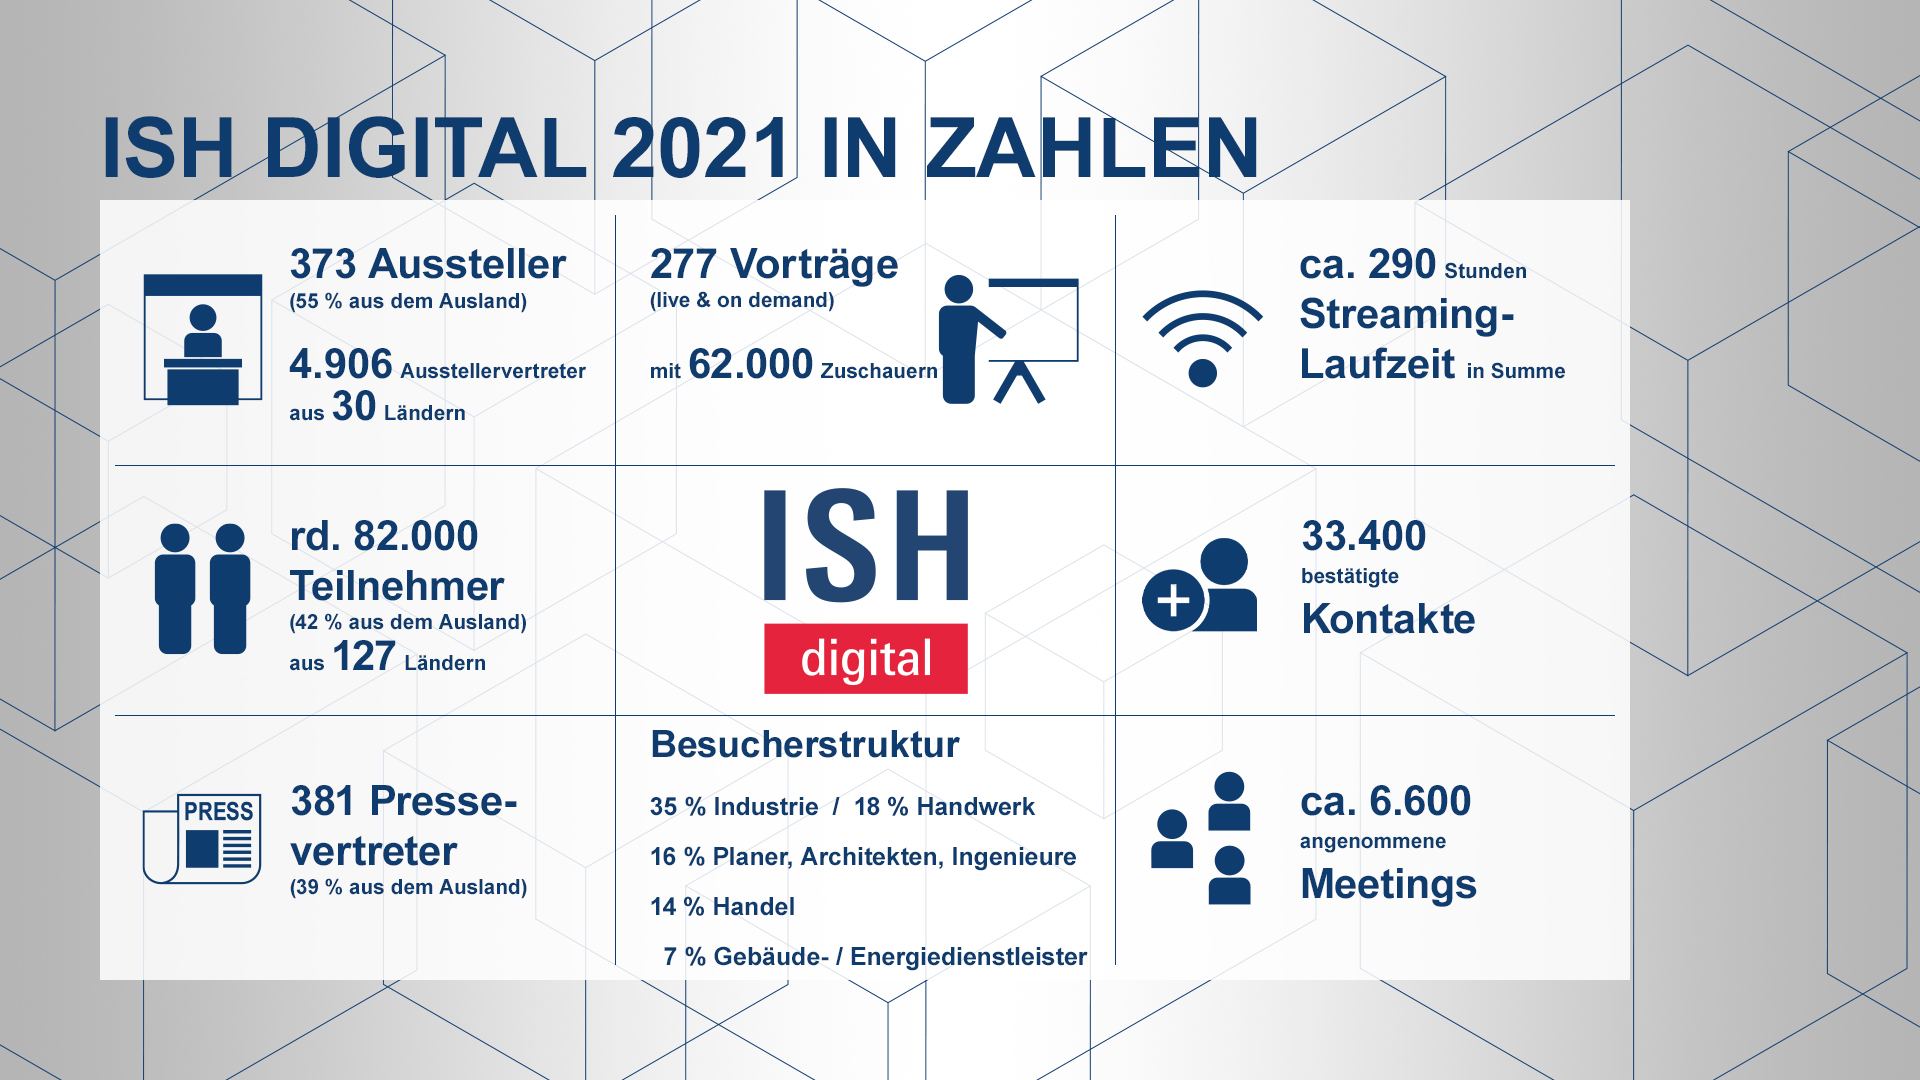 Daten und Fakten zur ISH digital 2021